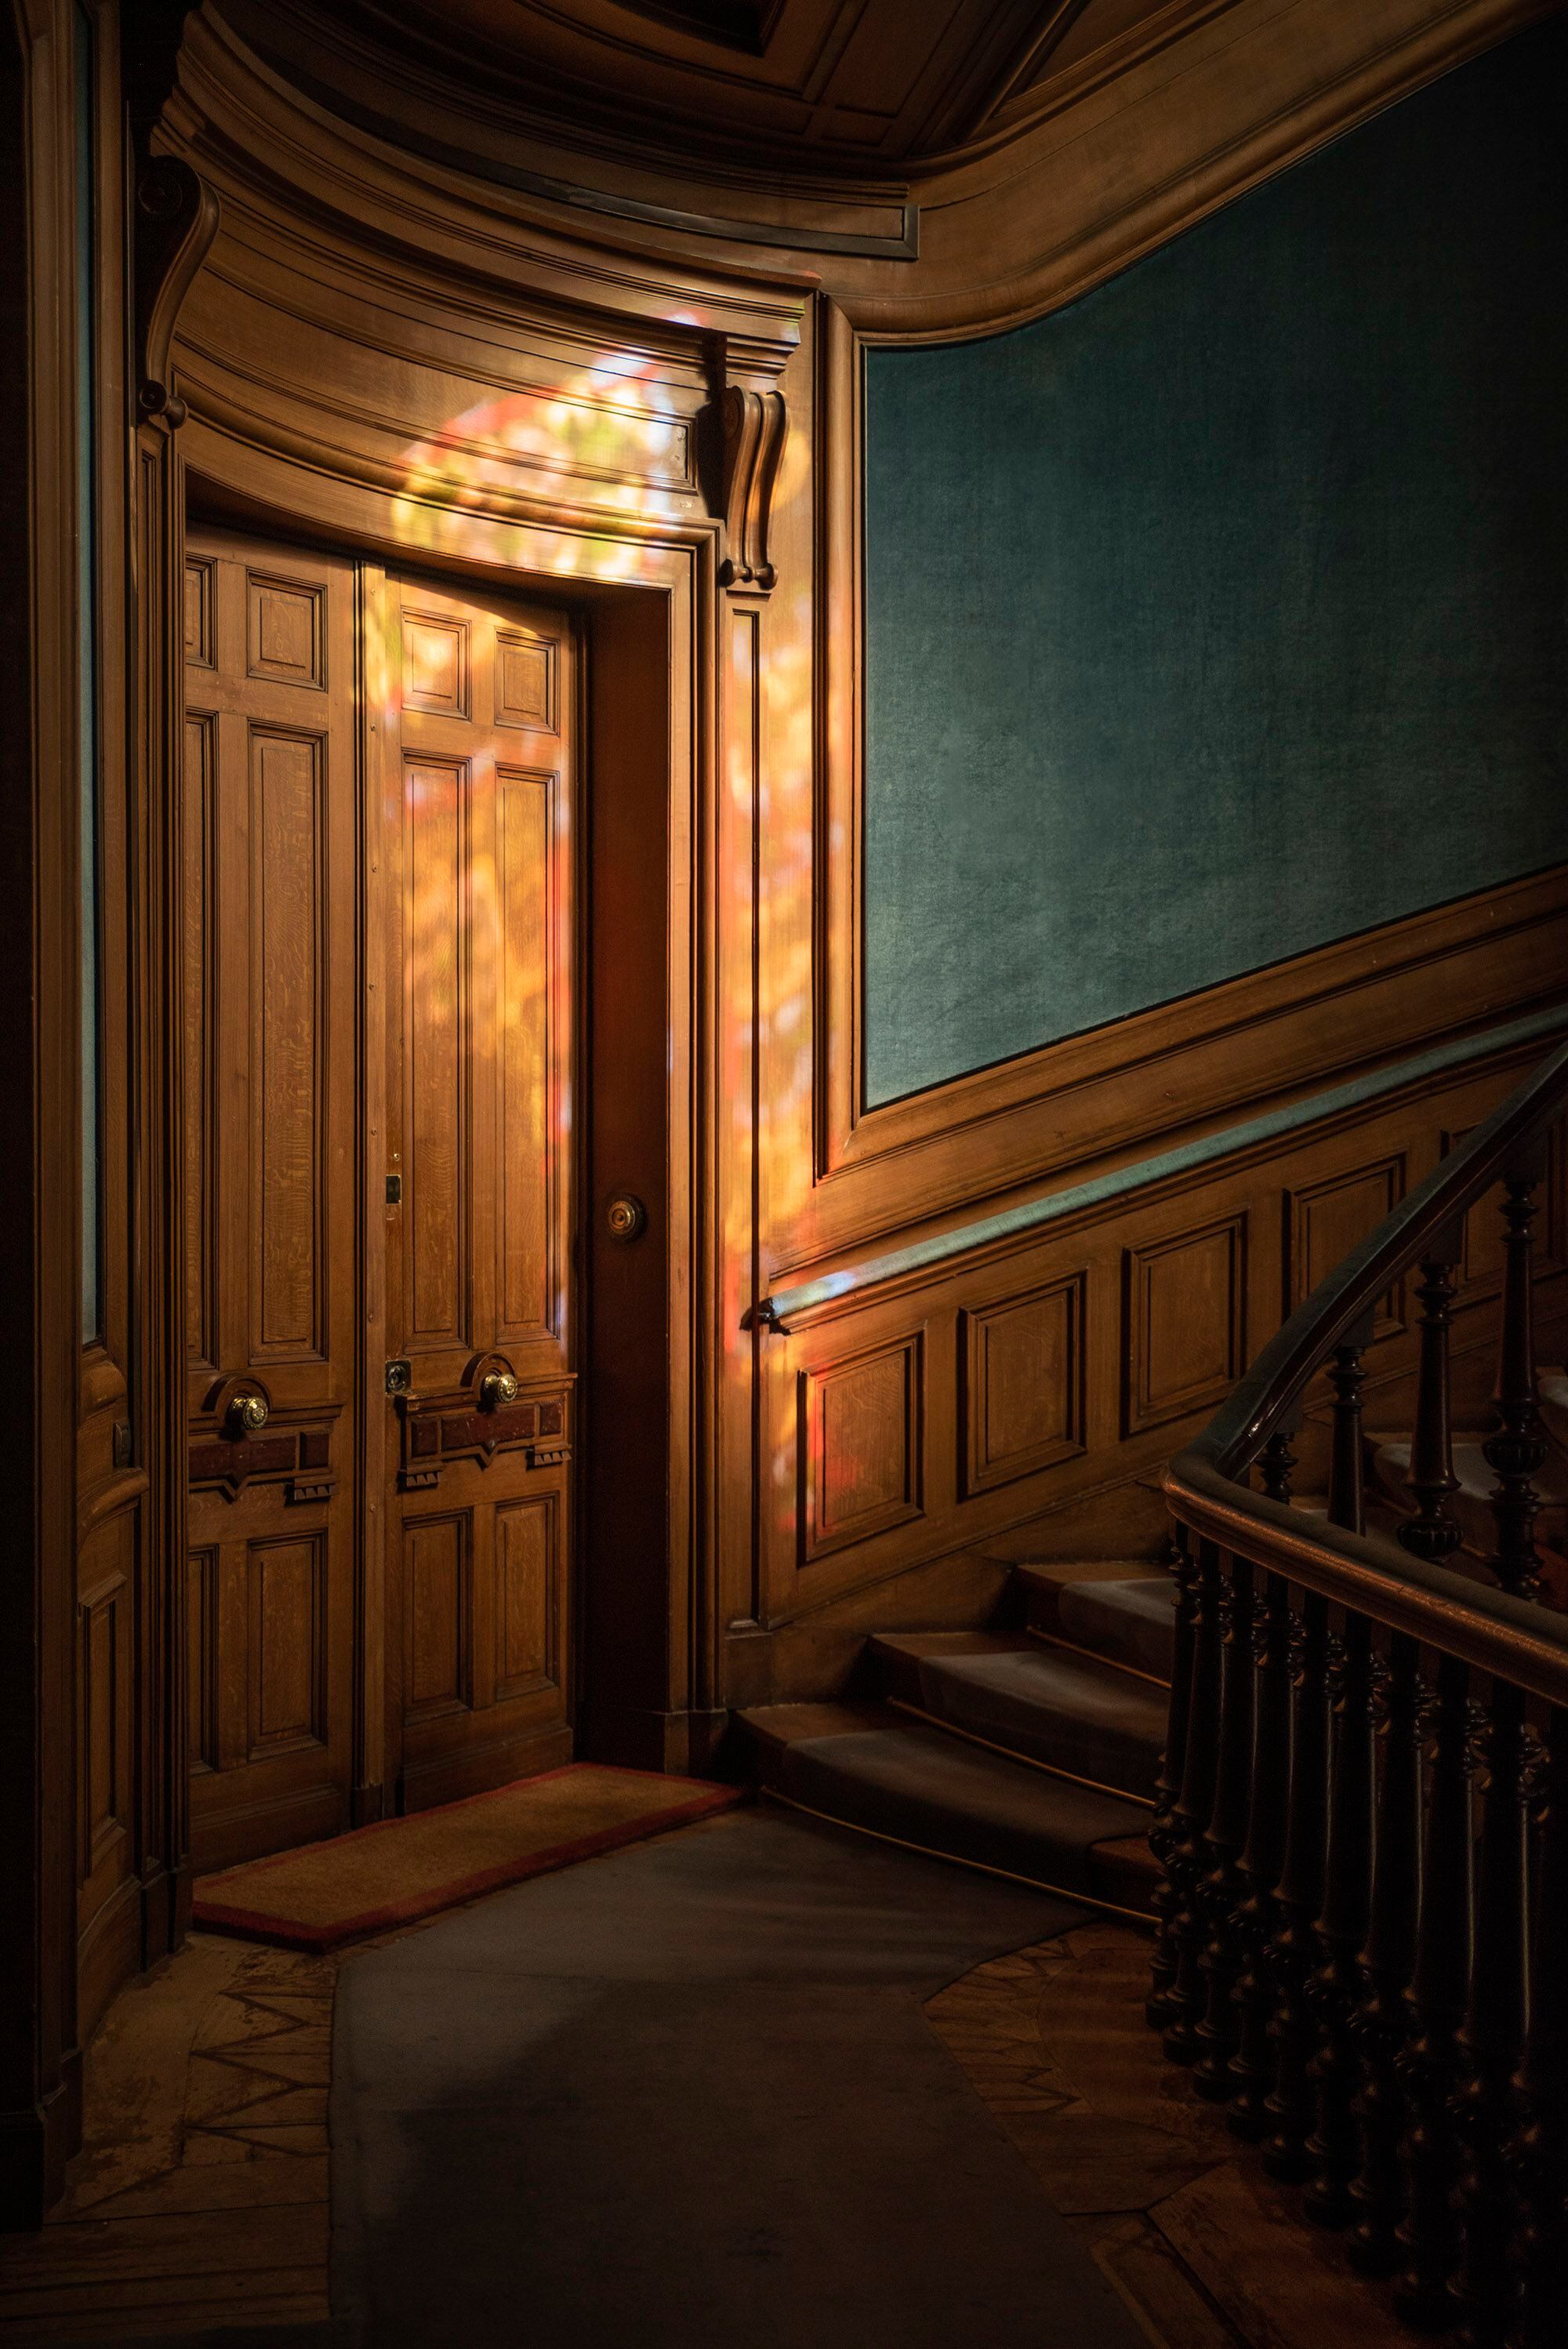 El rellano de la escalera que conduce al piso superiorestá revestido en boiserie. La legendaria condesa Jacqueline de Ribes es vecina de la princesa D’Arenberg.